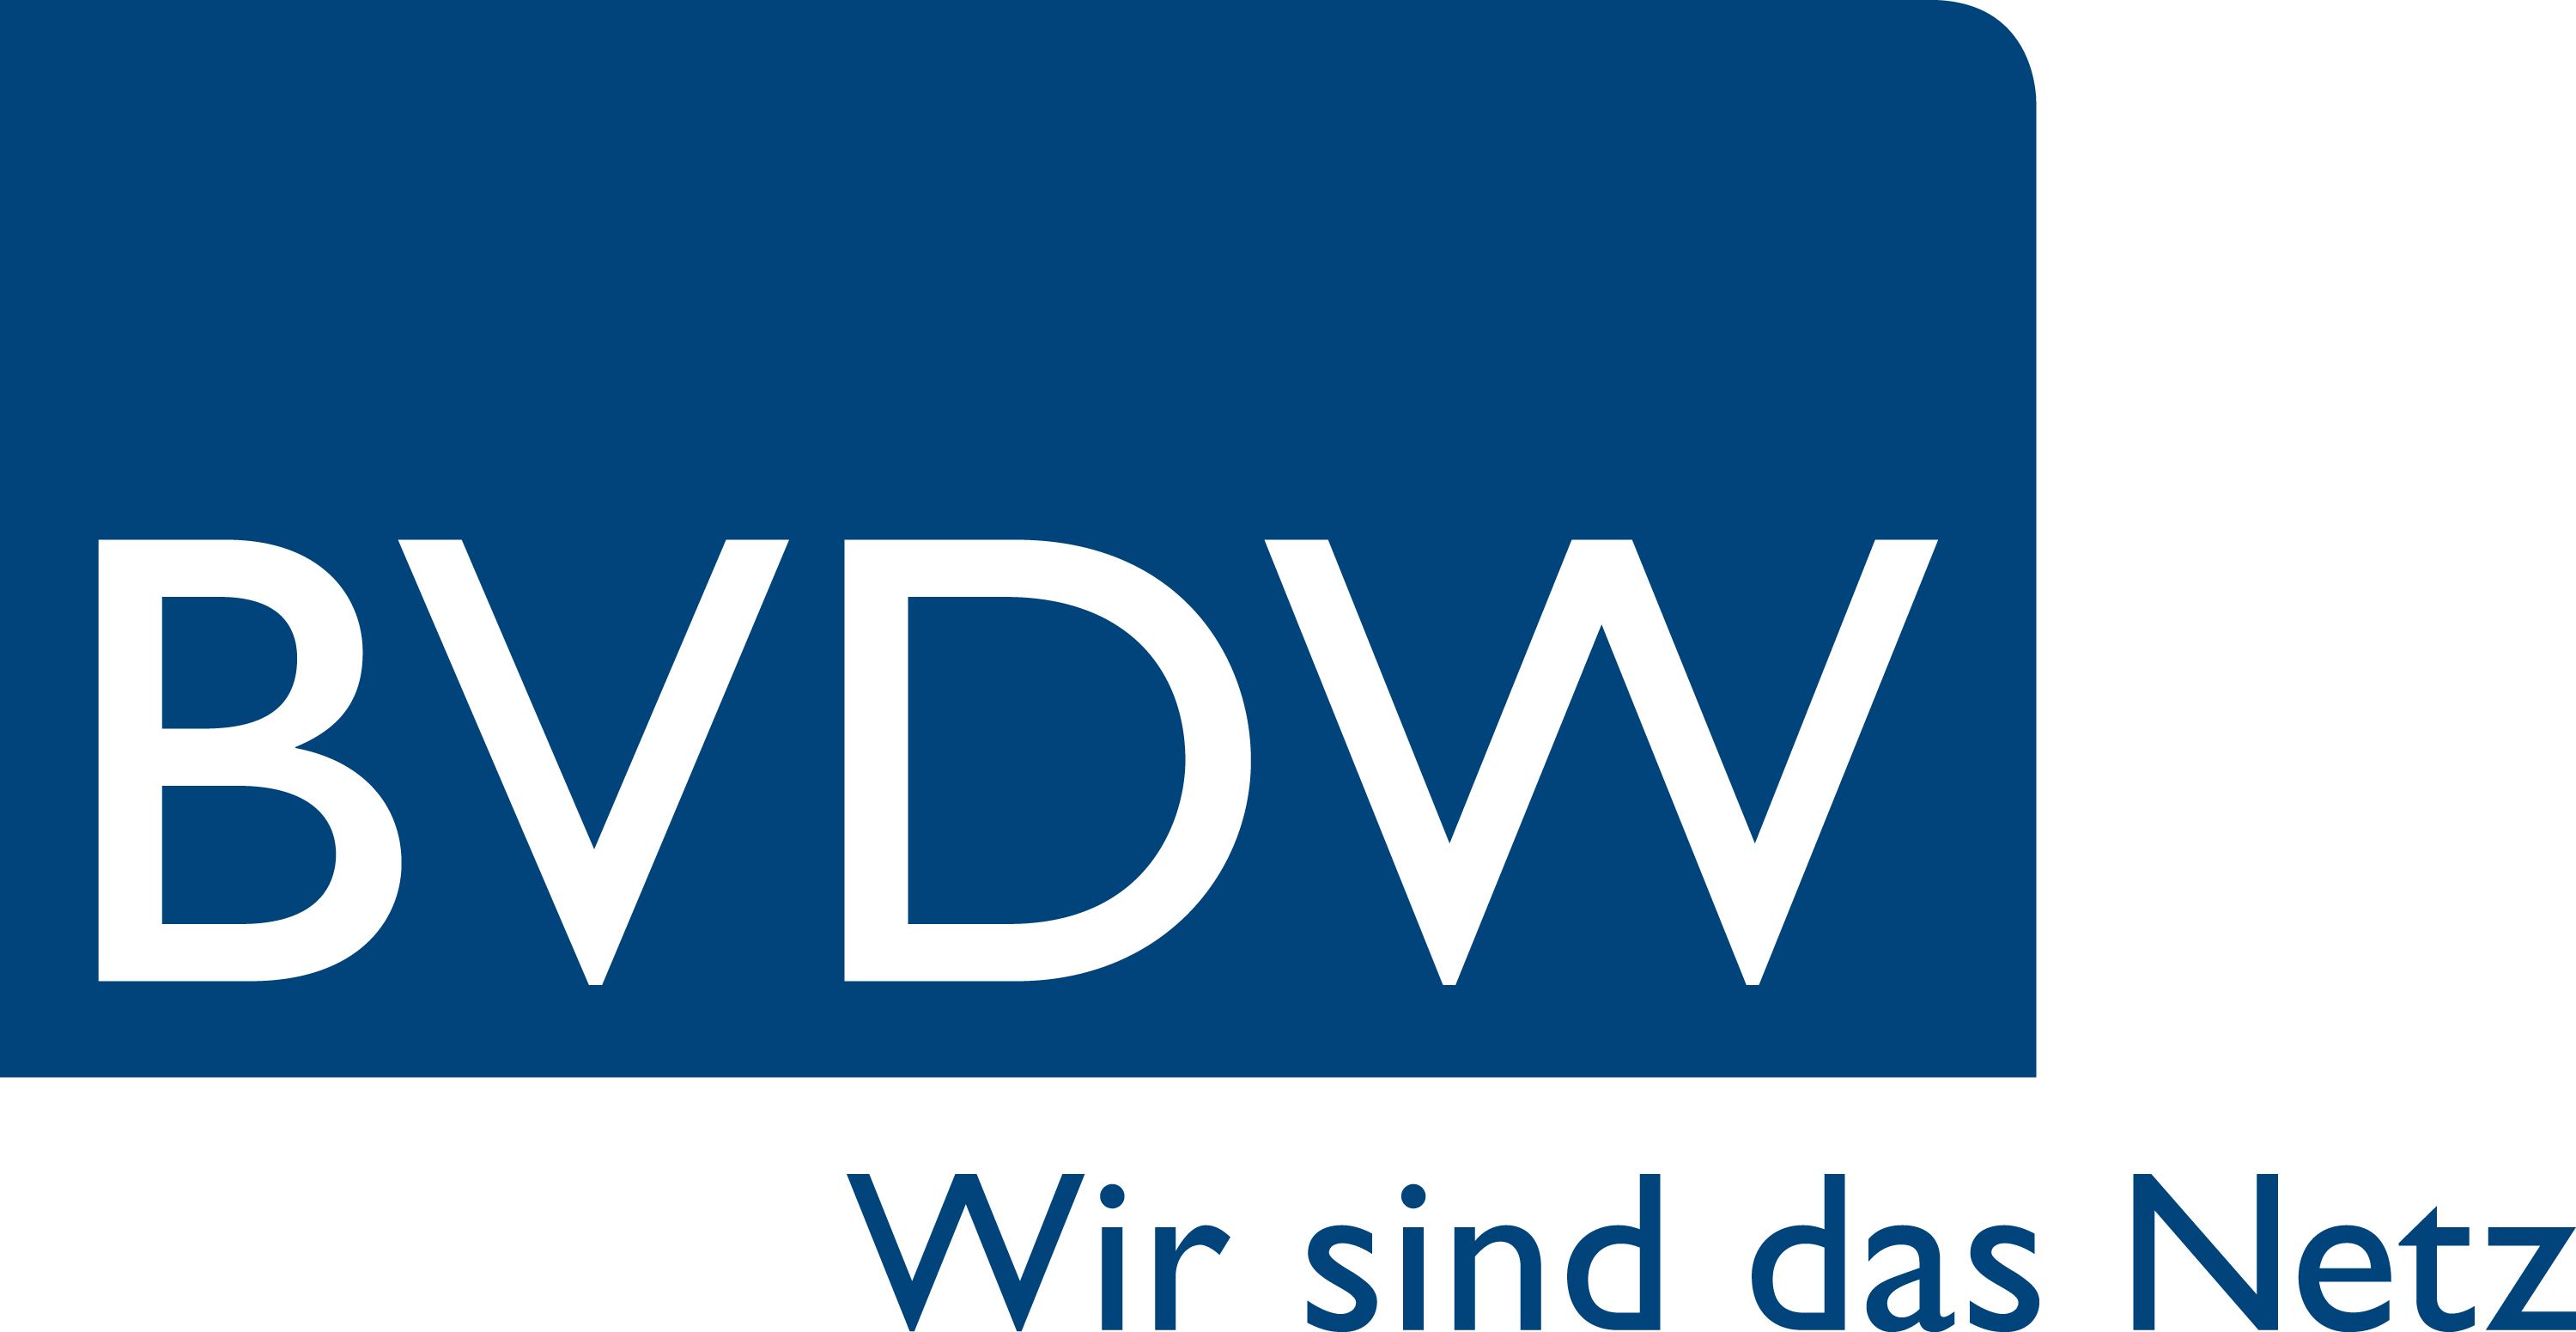 Erste Qualitätszertifikate vom BVDW schaffen Transparenz